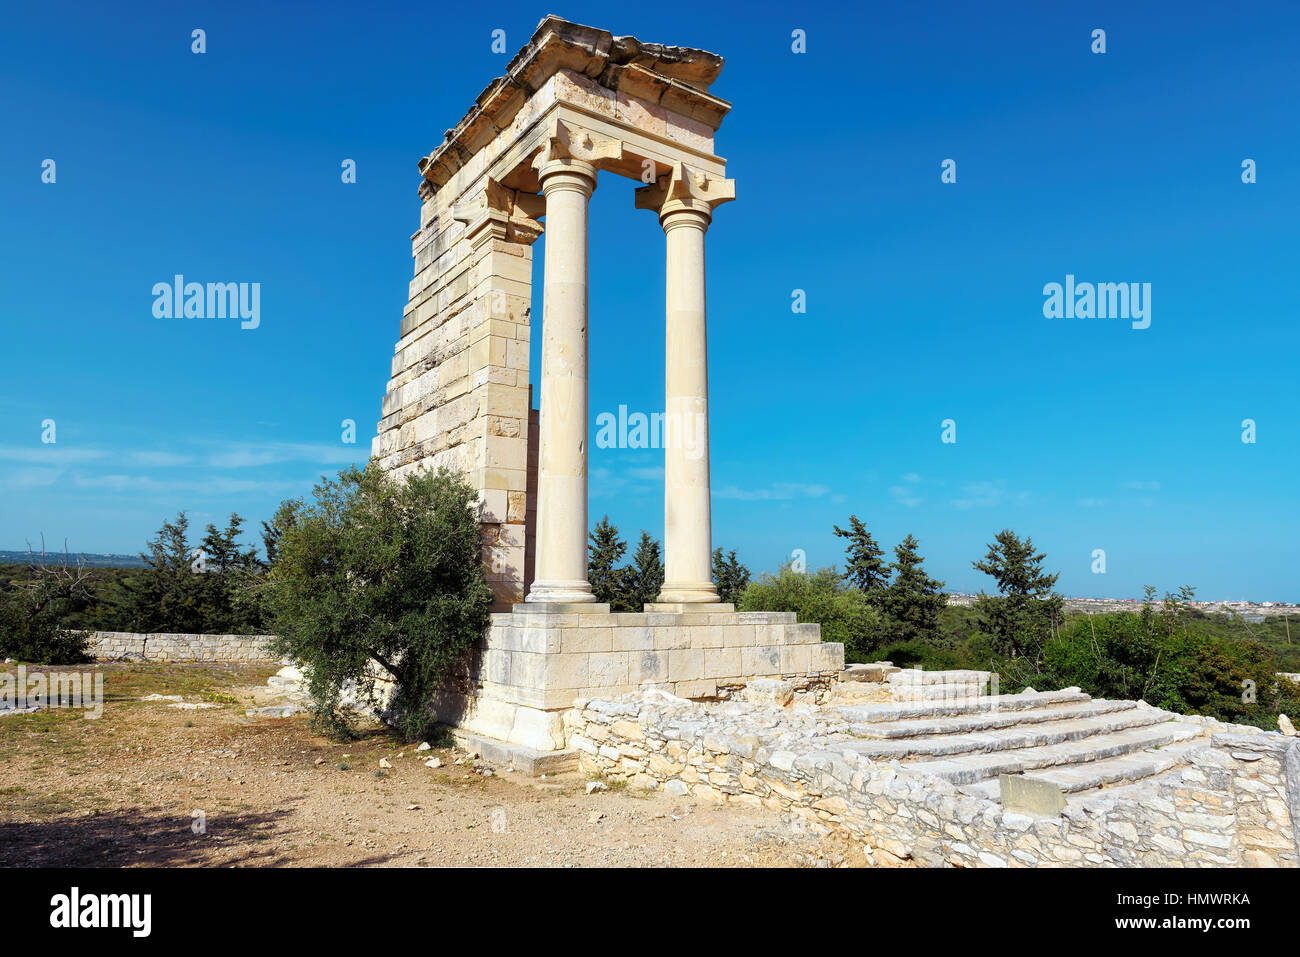 Ruines du sanctuaire d'Apollon Hylates à Kourion - principaux centres religieux de Chypre antique et l'un des plus populaires lieu touristique Banque D'Images